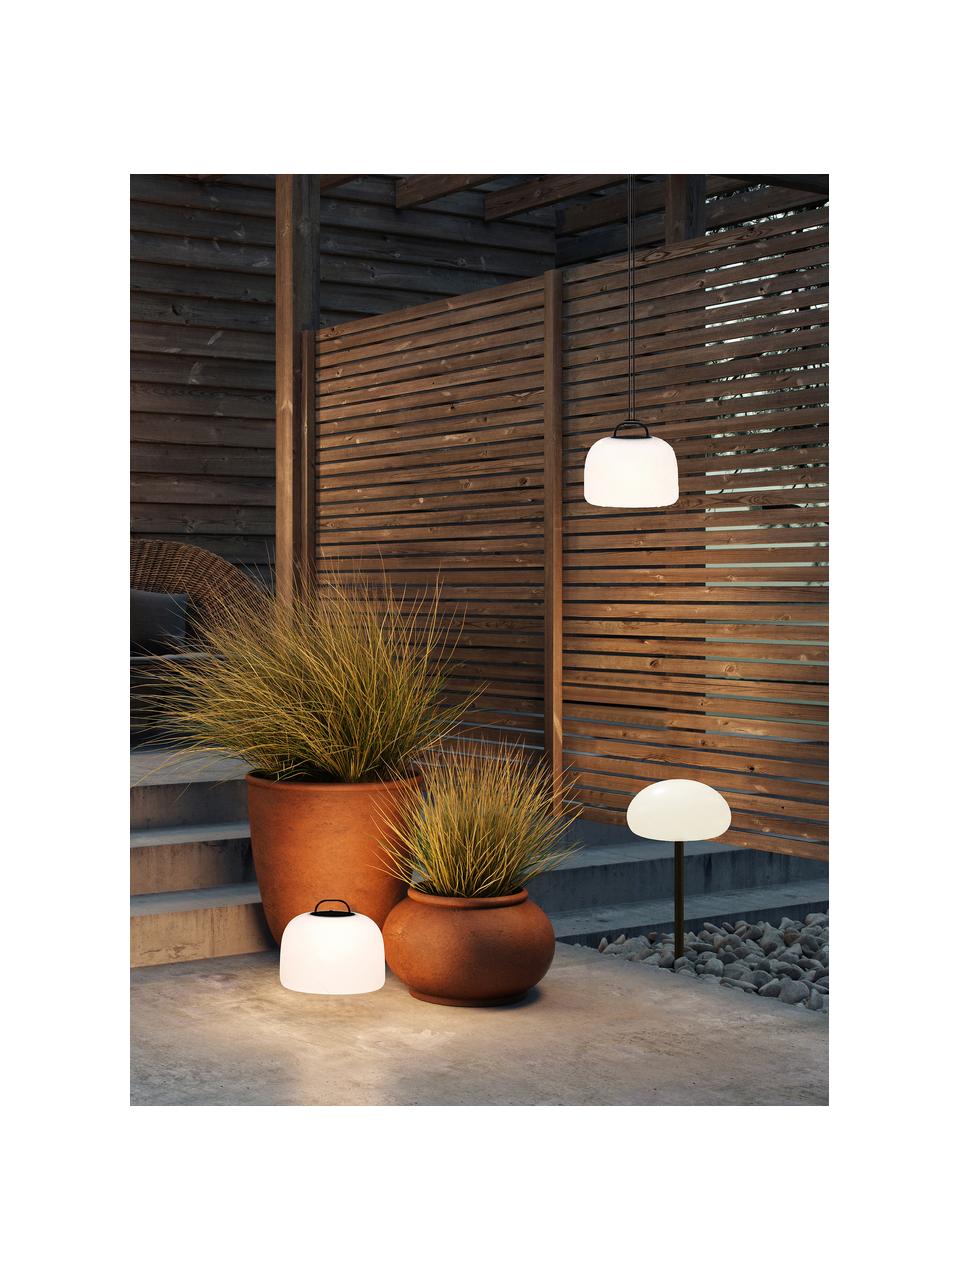 Lampe d'extérieur LED mobile Kettle, intensité lumineuse variable, Blanc crème, vert foncé, Ø 36 x haut. 31 cm